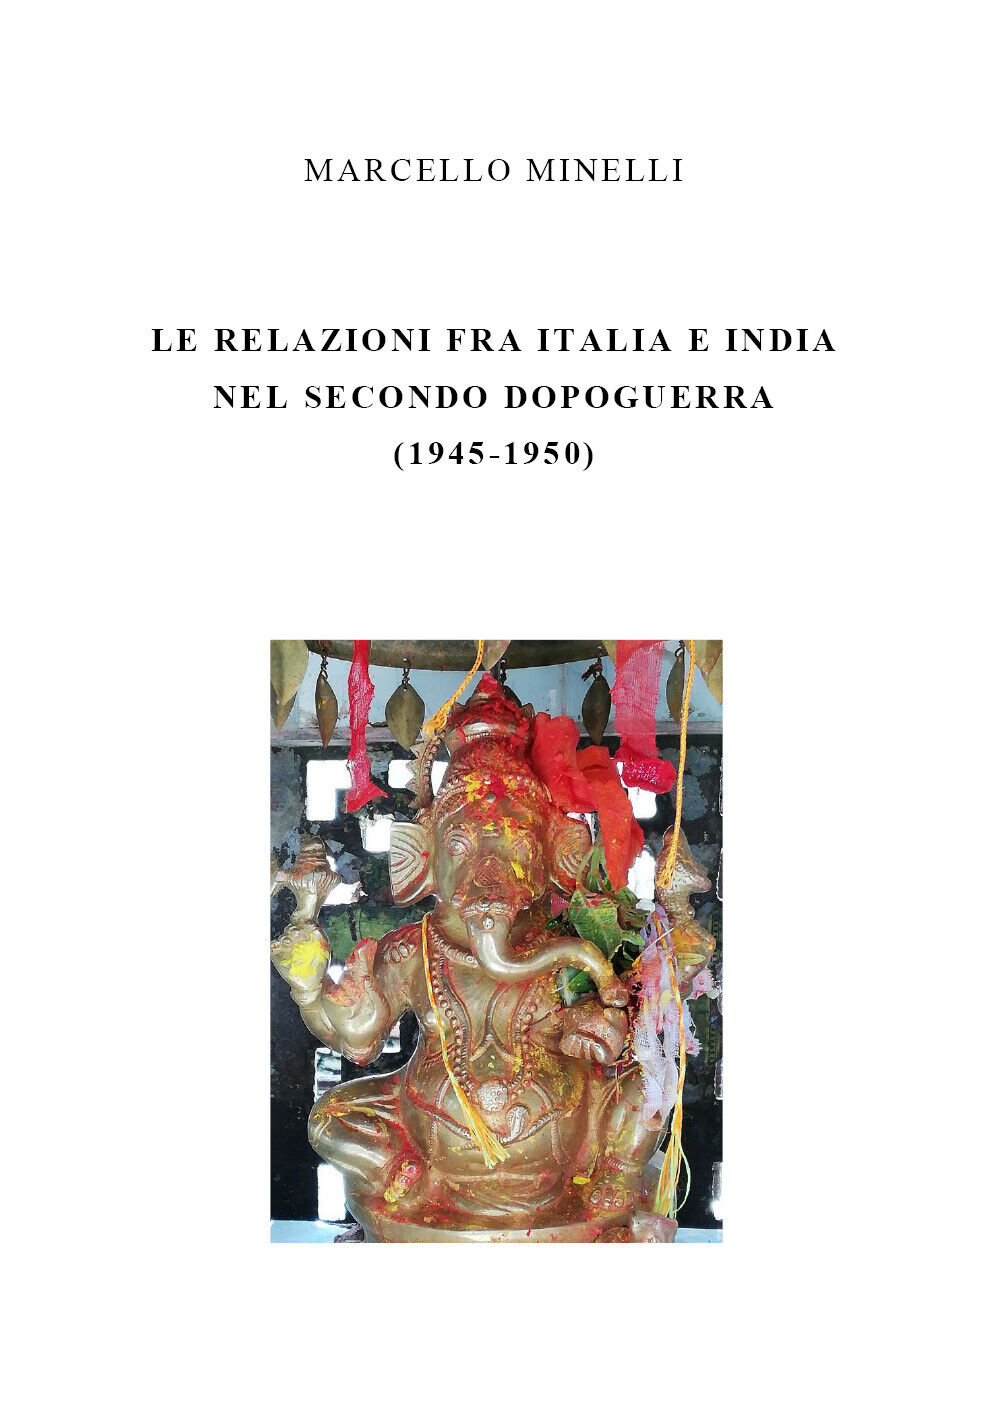 Le relazioni fra Italia e India nel secondo dopoguerra - Marcello Minelli - P libro usato